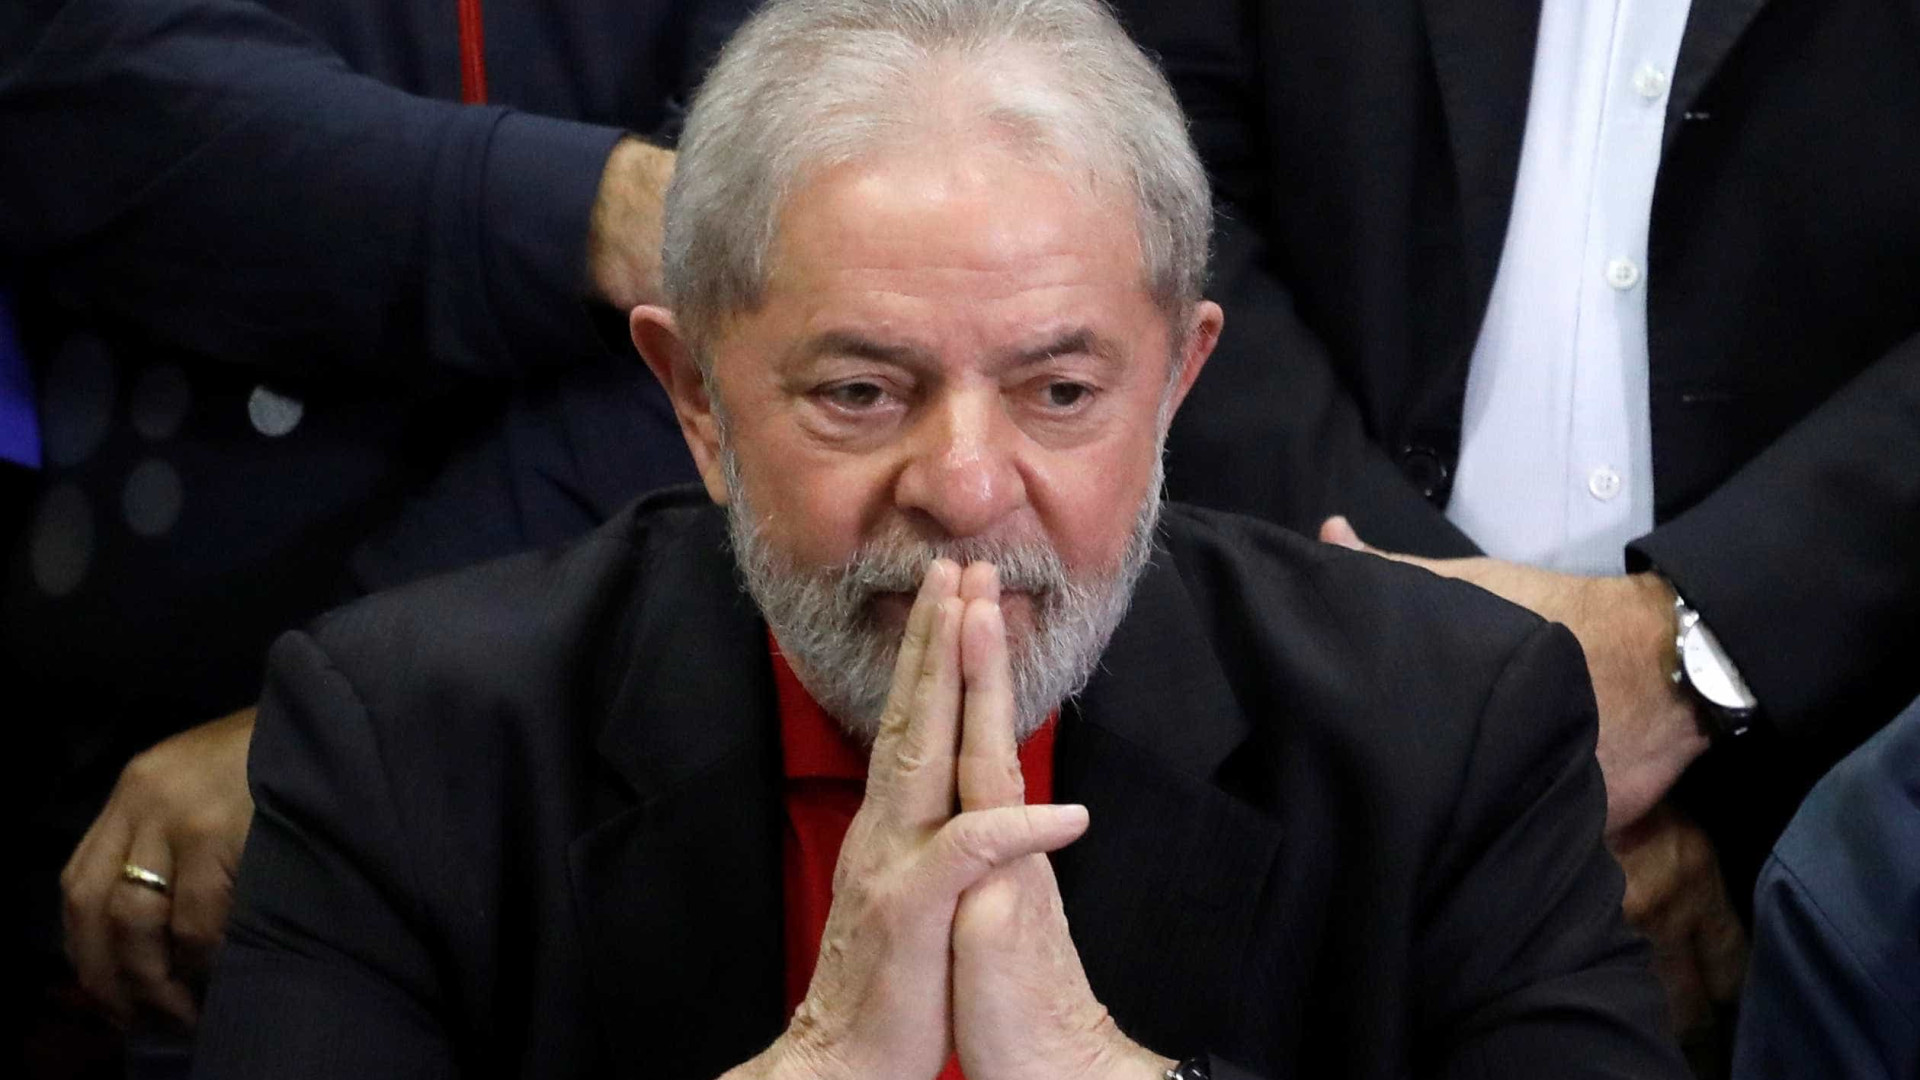 Rio terá de carreata a telão em atos para julgamento de Lula